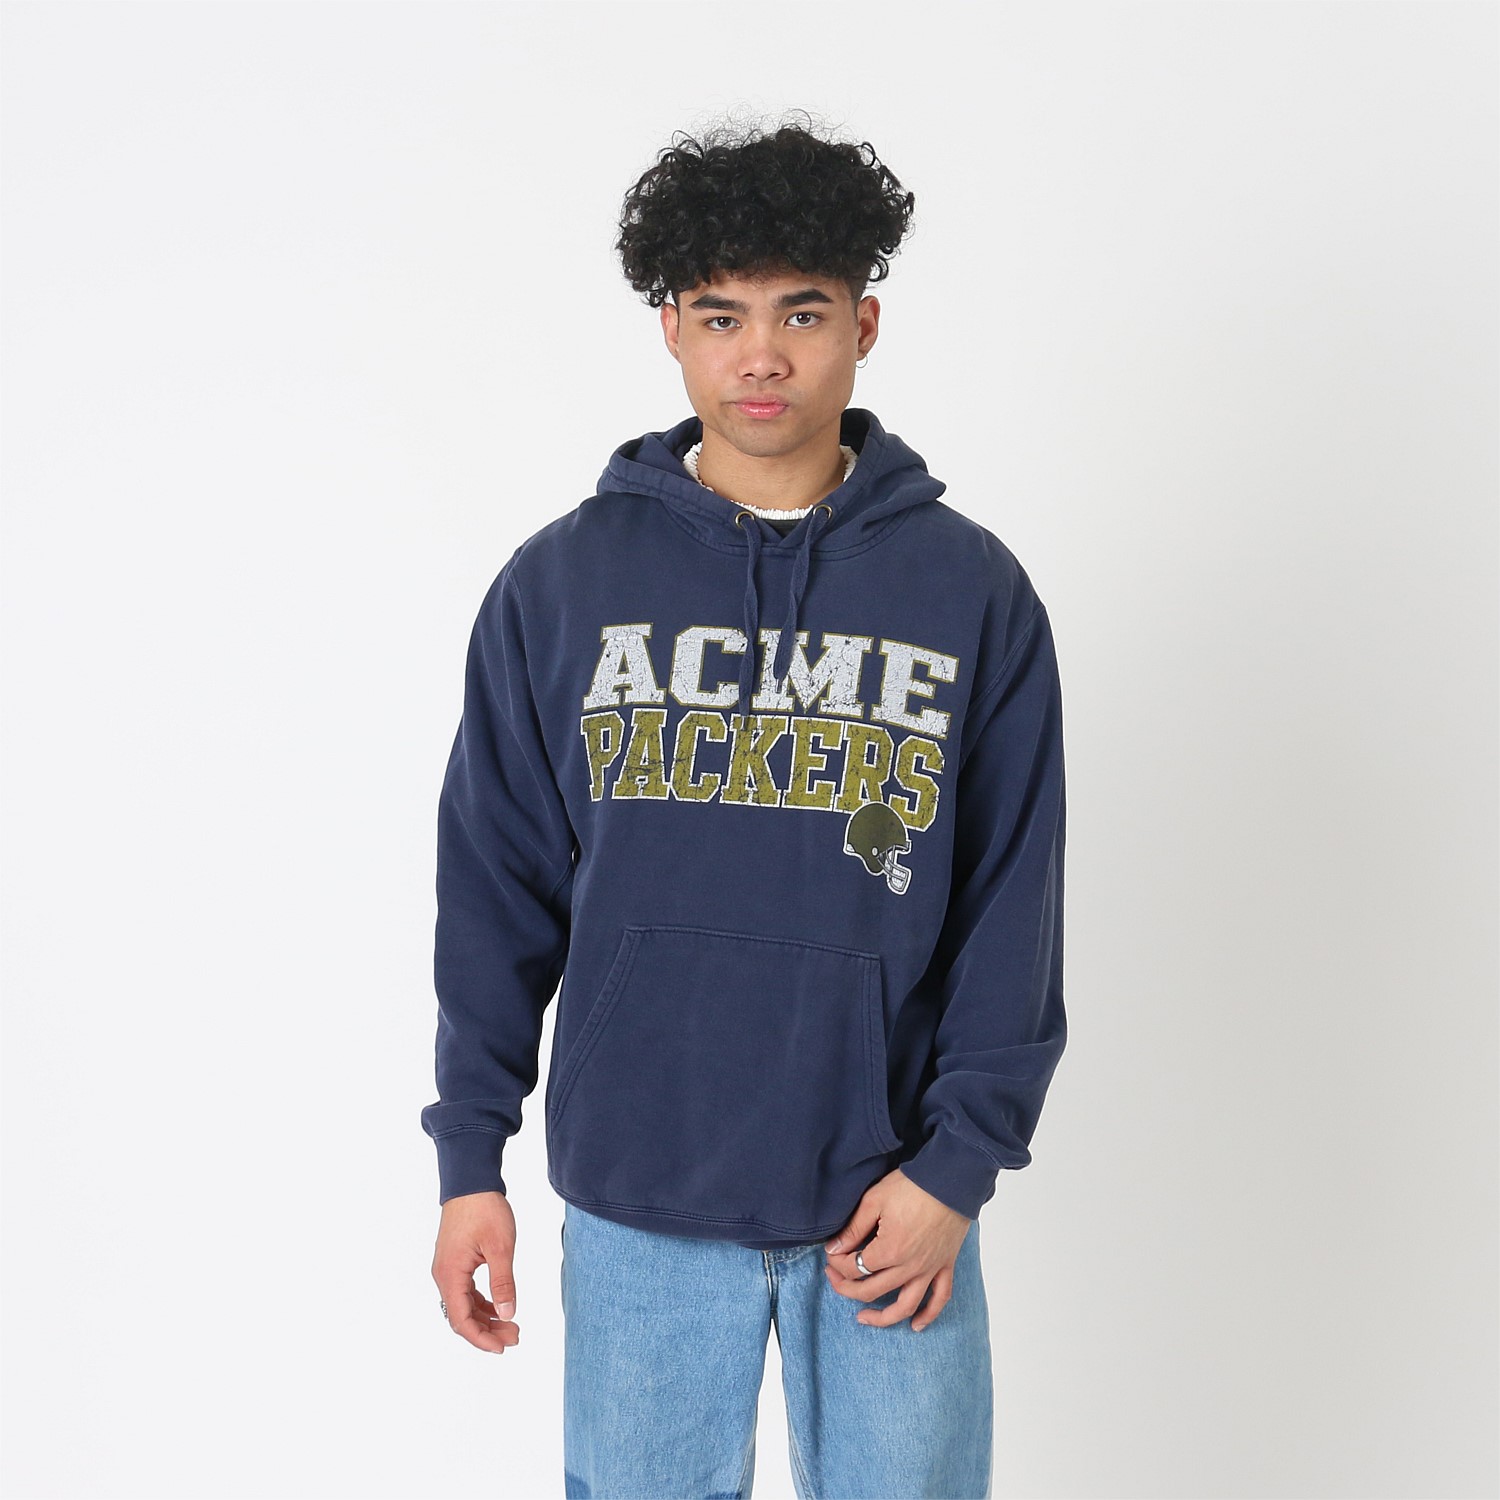 acme packers hooded sweatshirt